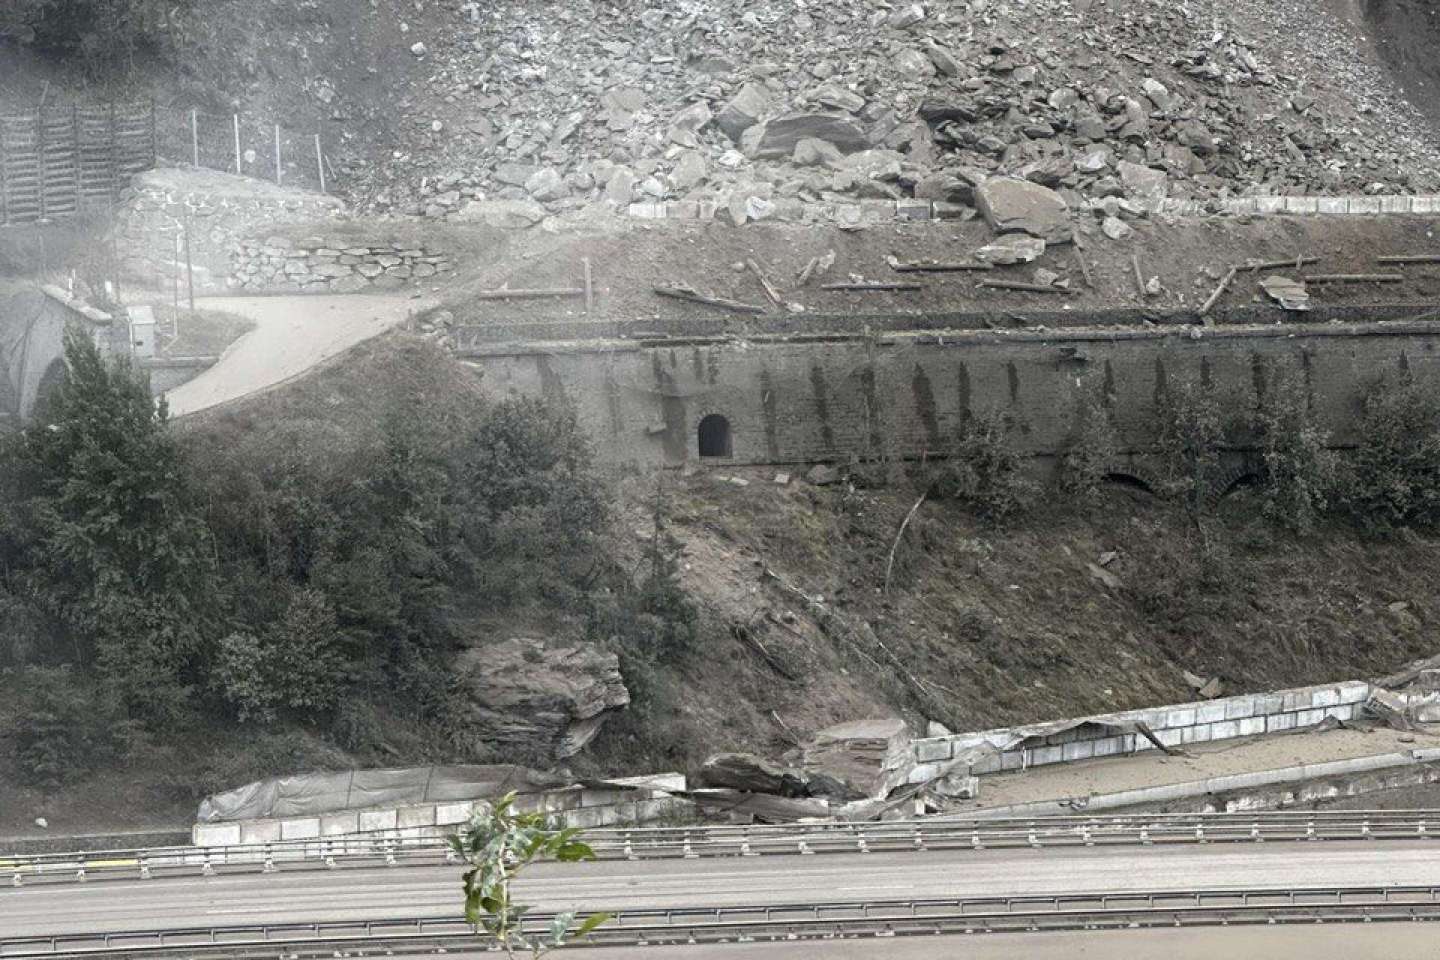 En Savoie, un impressionnant éboulement de roches interrompt le trafic ferroviaire entre la France et l’Italie